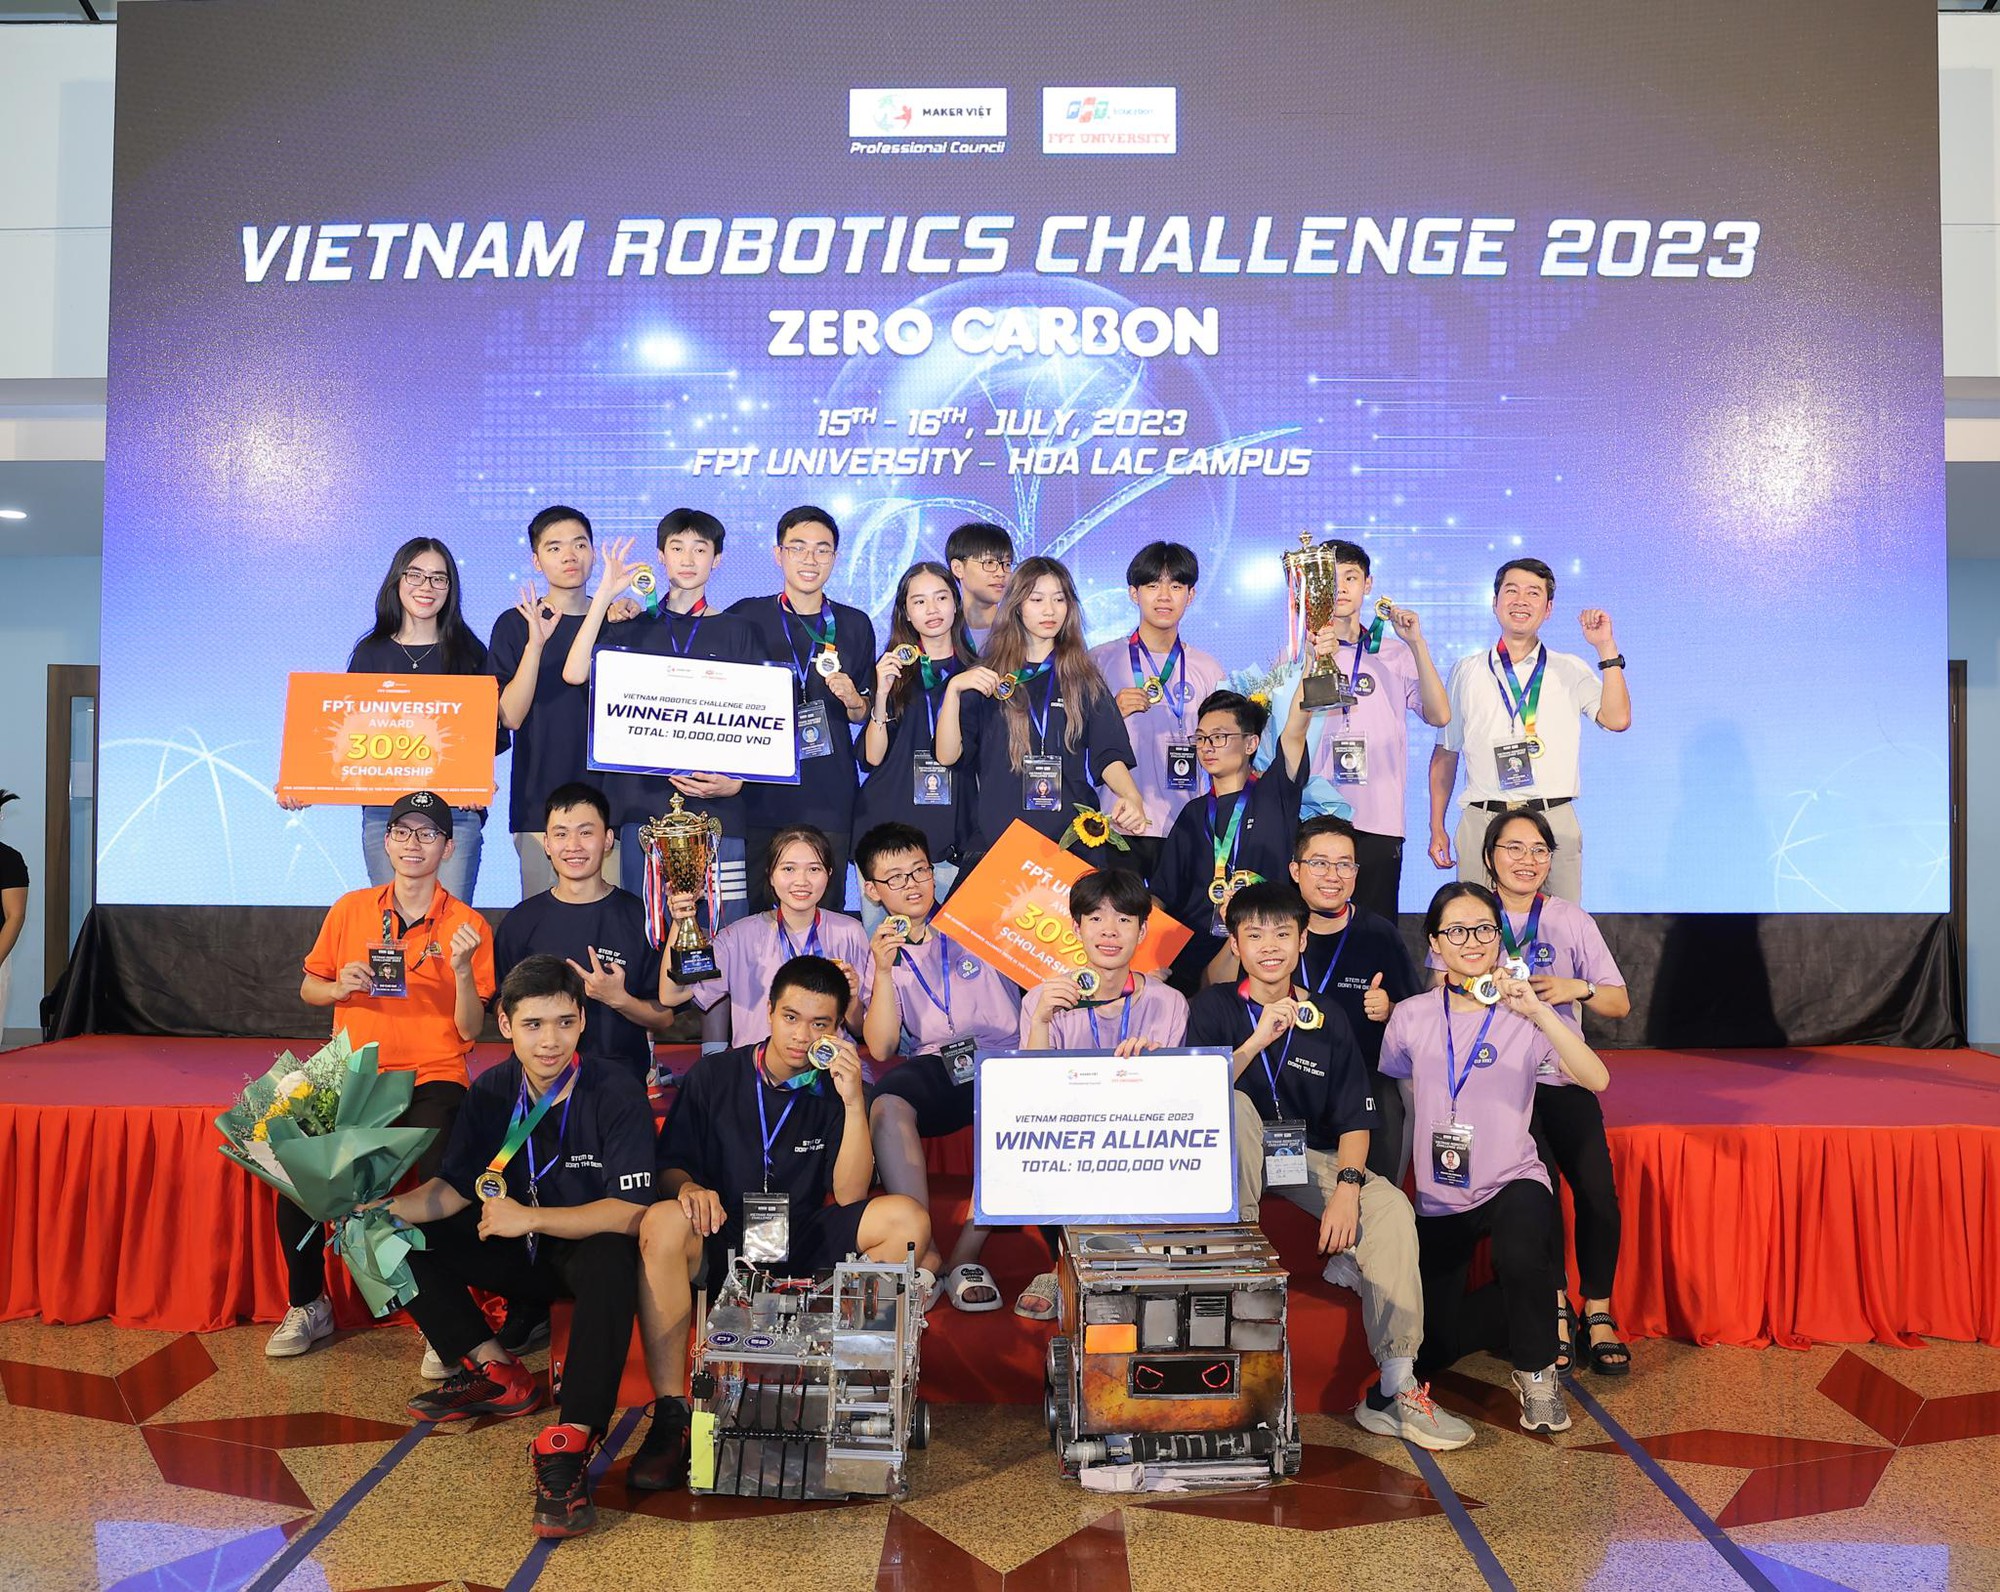 THPT Đoàn Thị Điểm và THPT Hai Bà Trưng - Thạch Thất nâng cúp vô địch Vietnam Robotics Challenge 2023 - Ảnh 3.